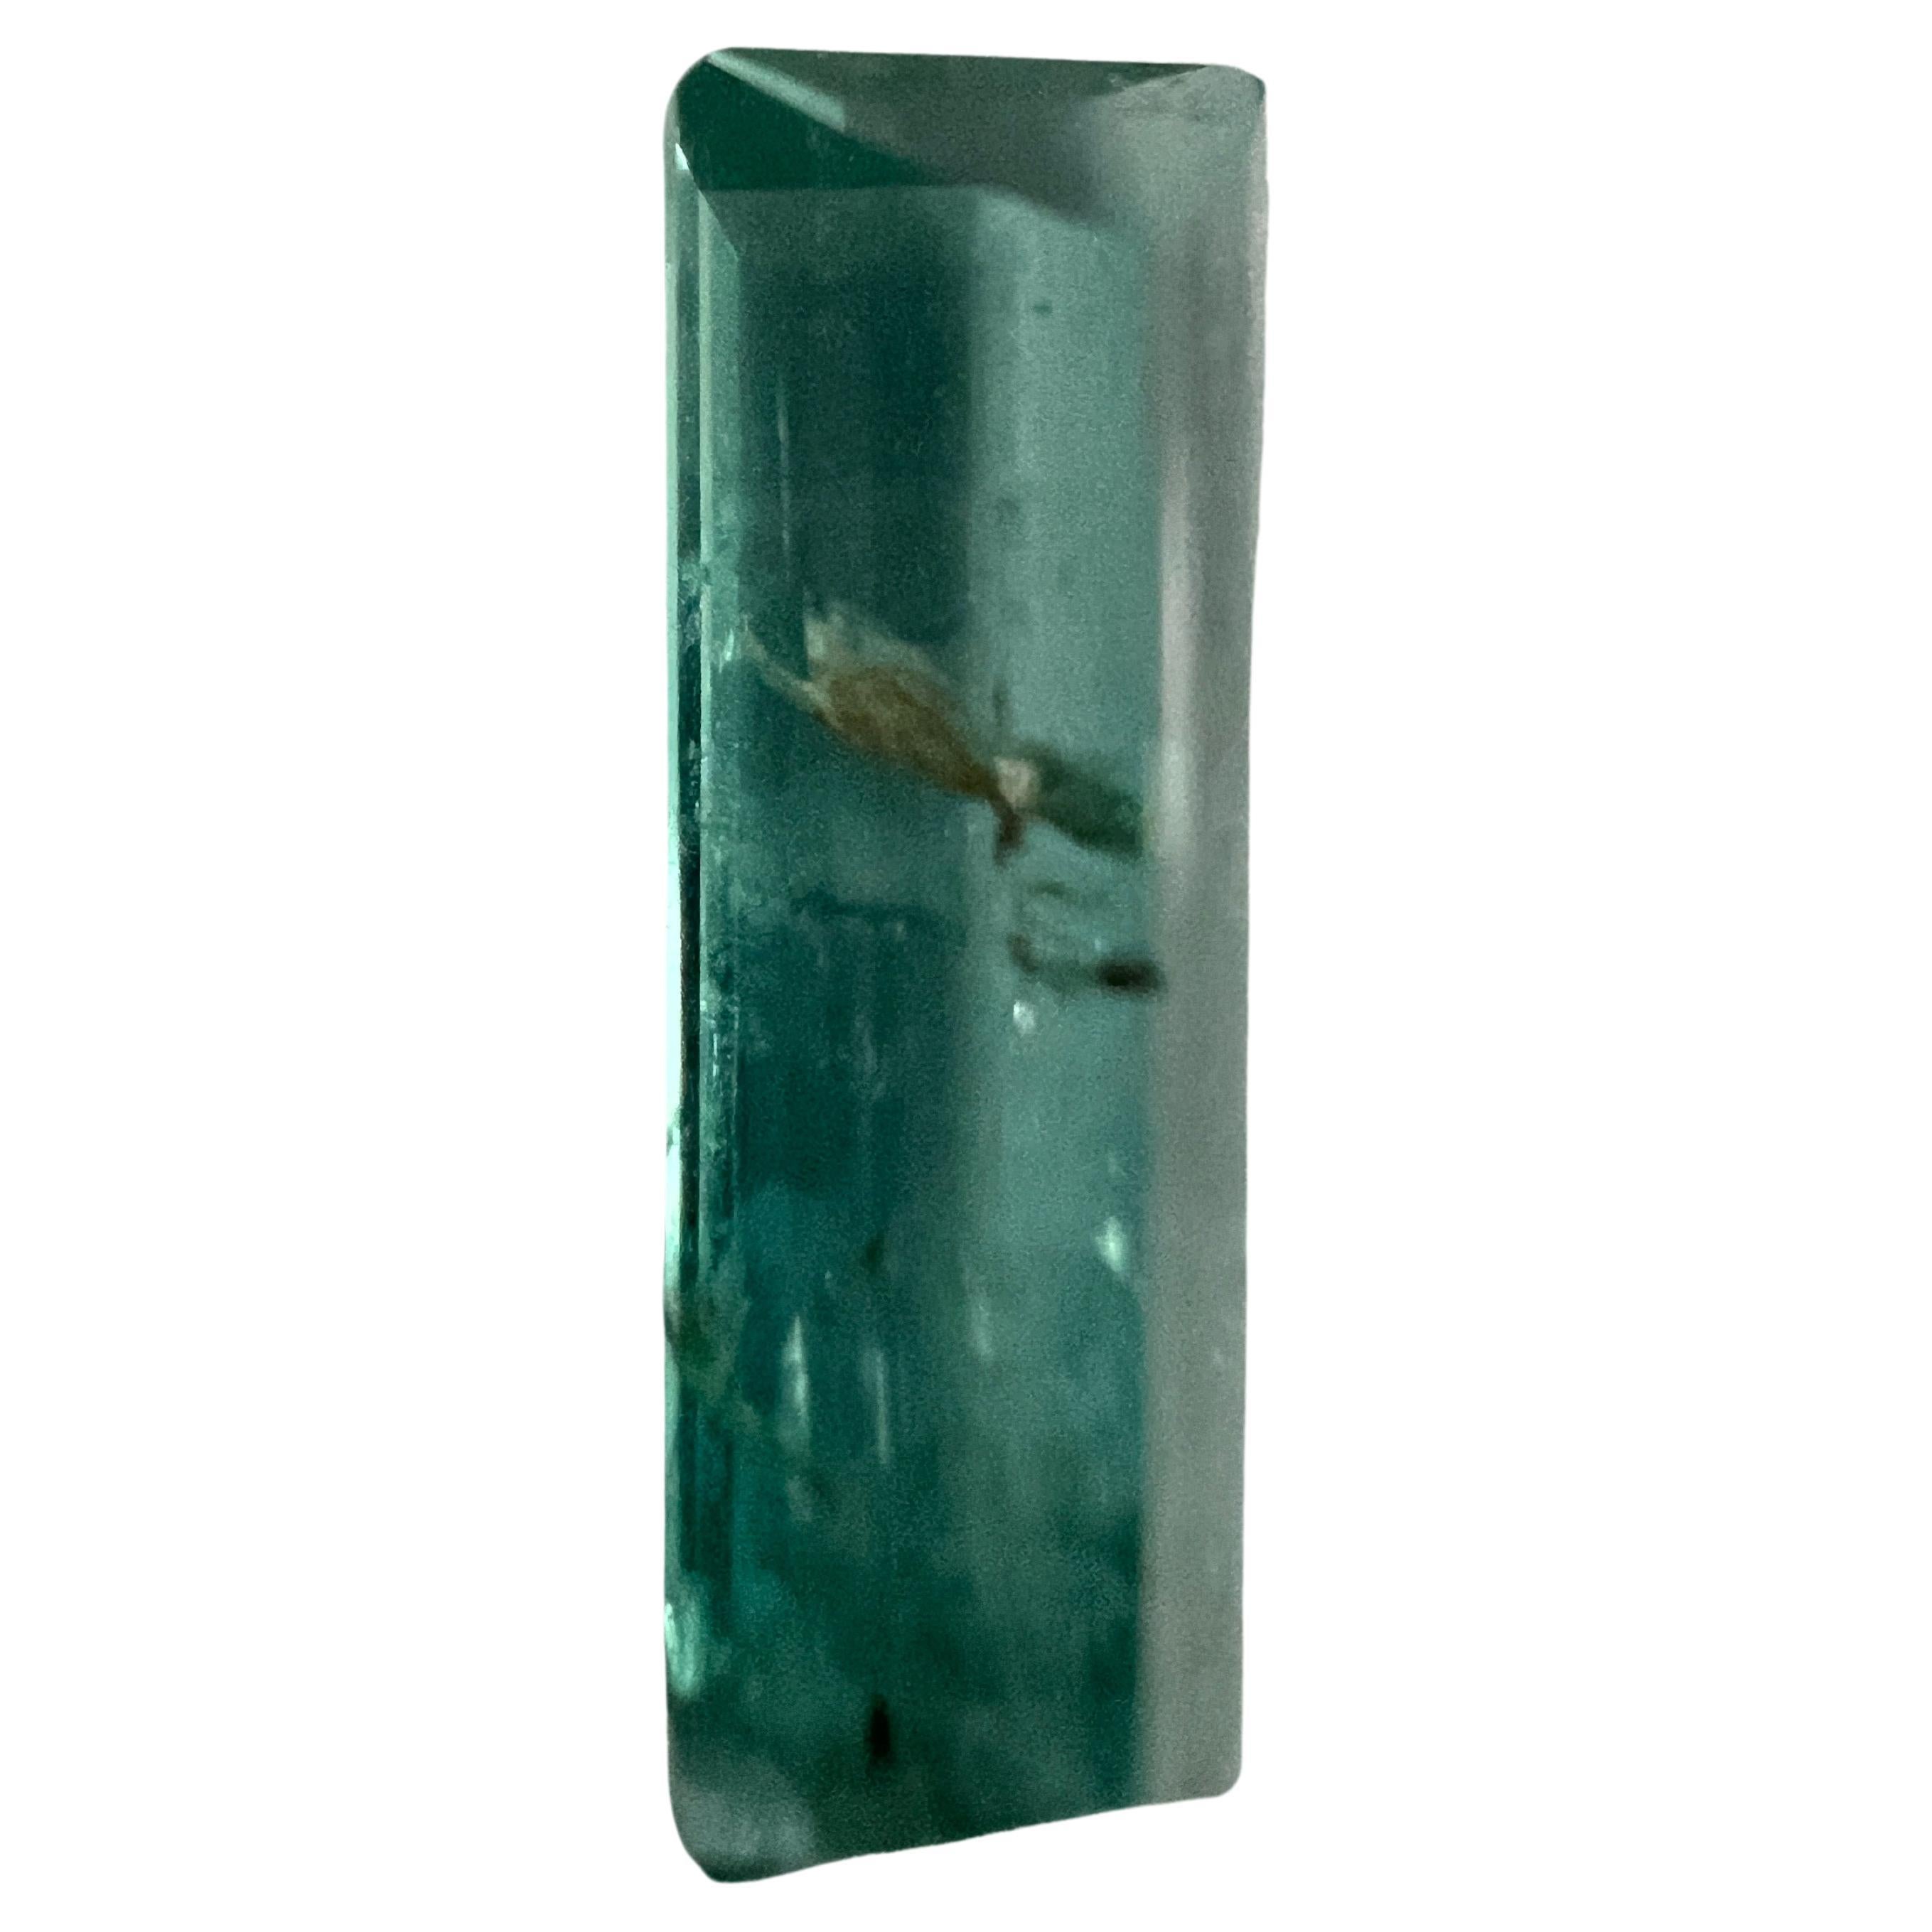 Entdecken Sie die pure Eleganz unseres 3,65ct ungeölten Smaragd-Edelsteins im Rechteckschliff. Dieser außergewöhnliche Edelstein strahlt ein tiefes, sattes Grün aus, das an das üppigste Laub erinnert. Mit seinem raffinierten Rechteckschliff bietet